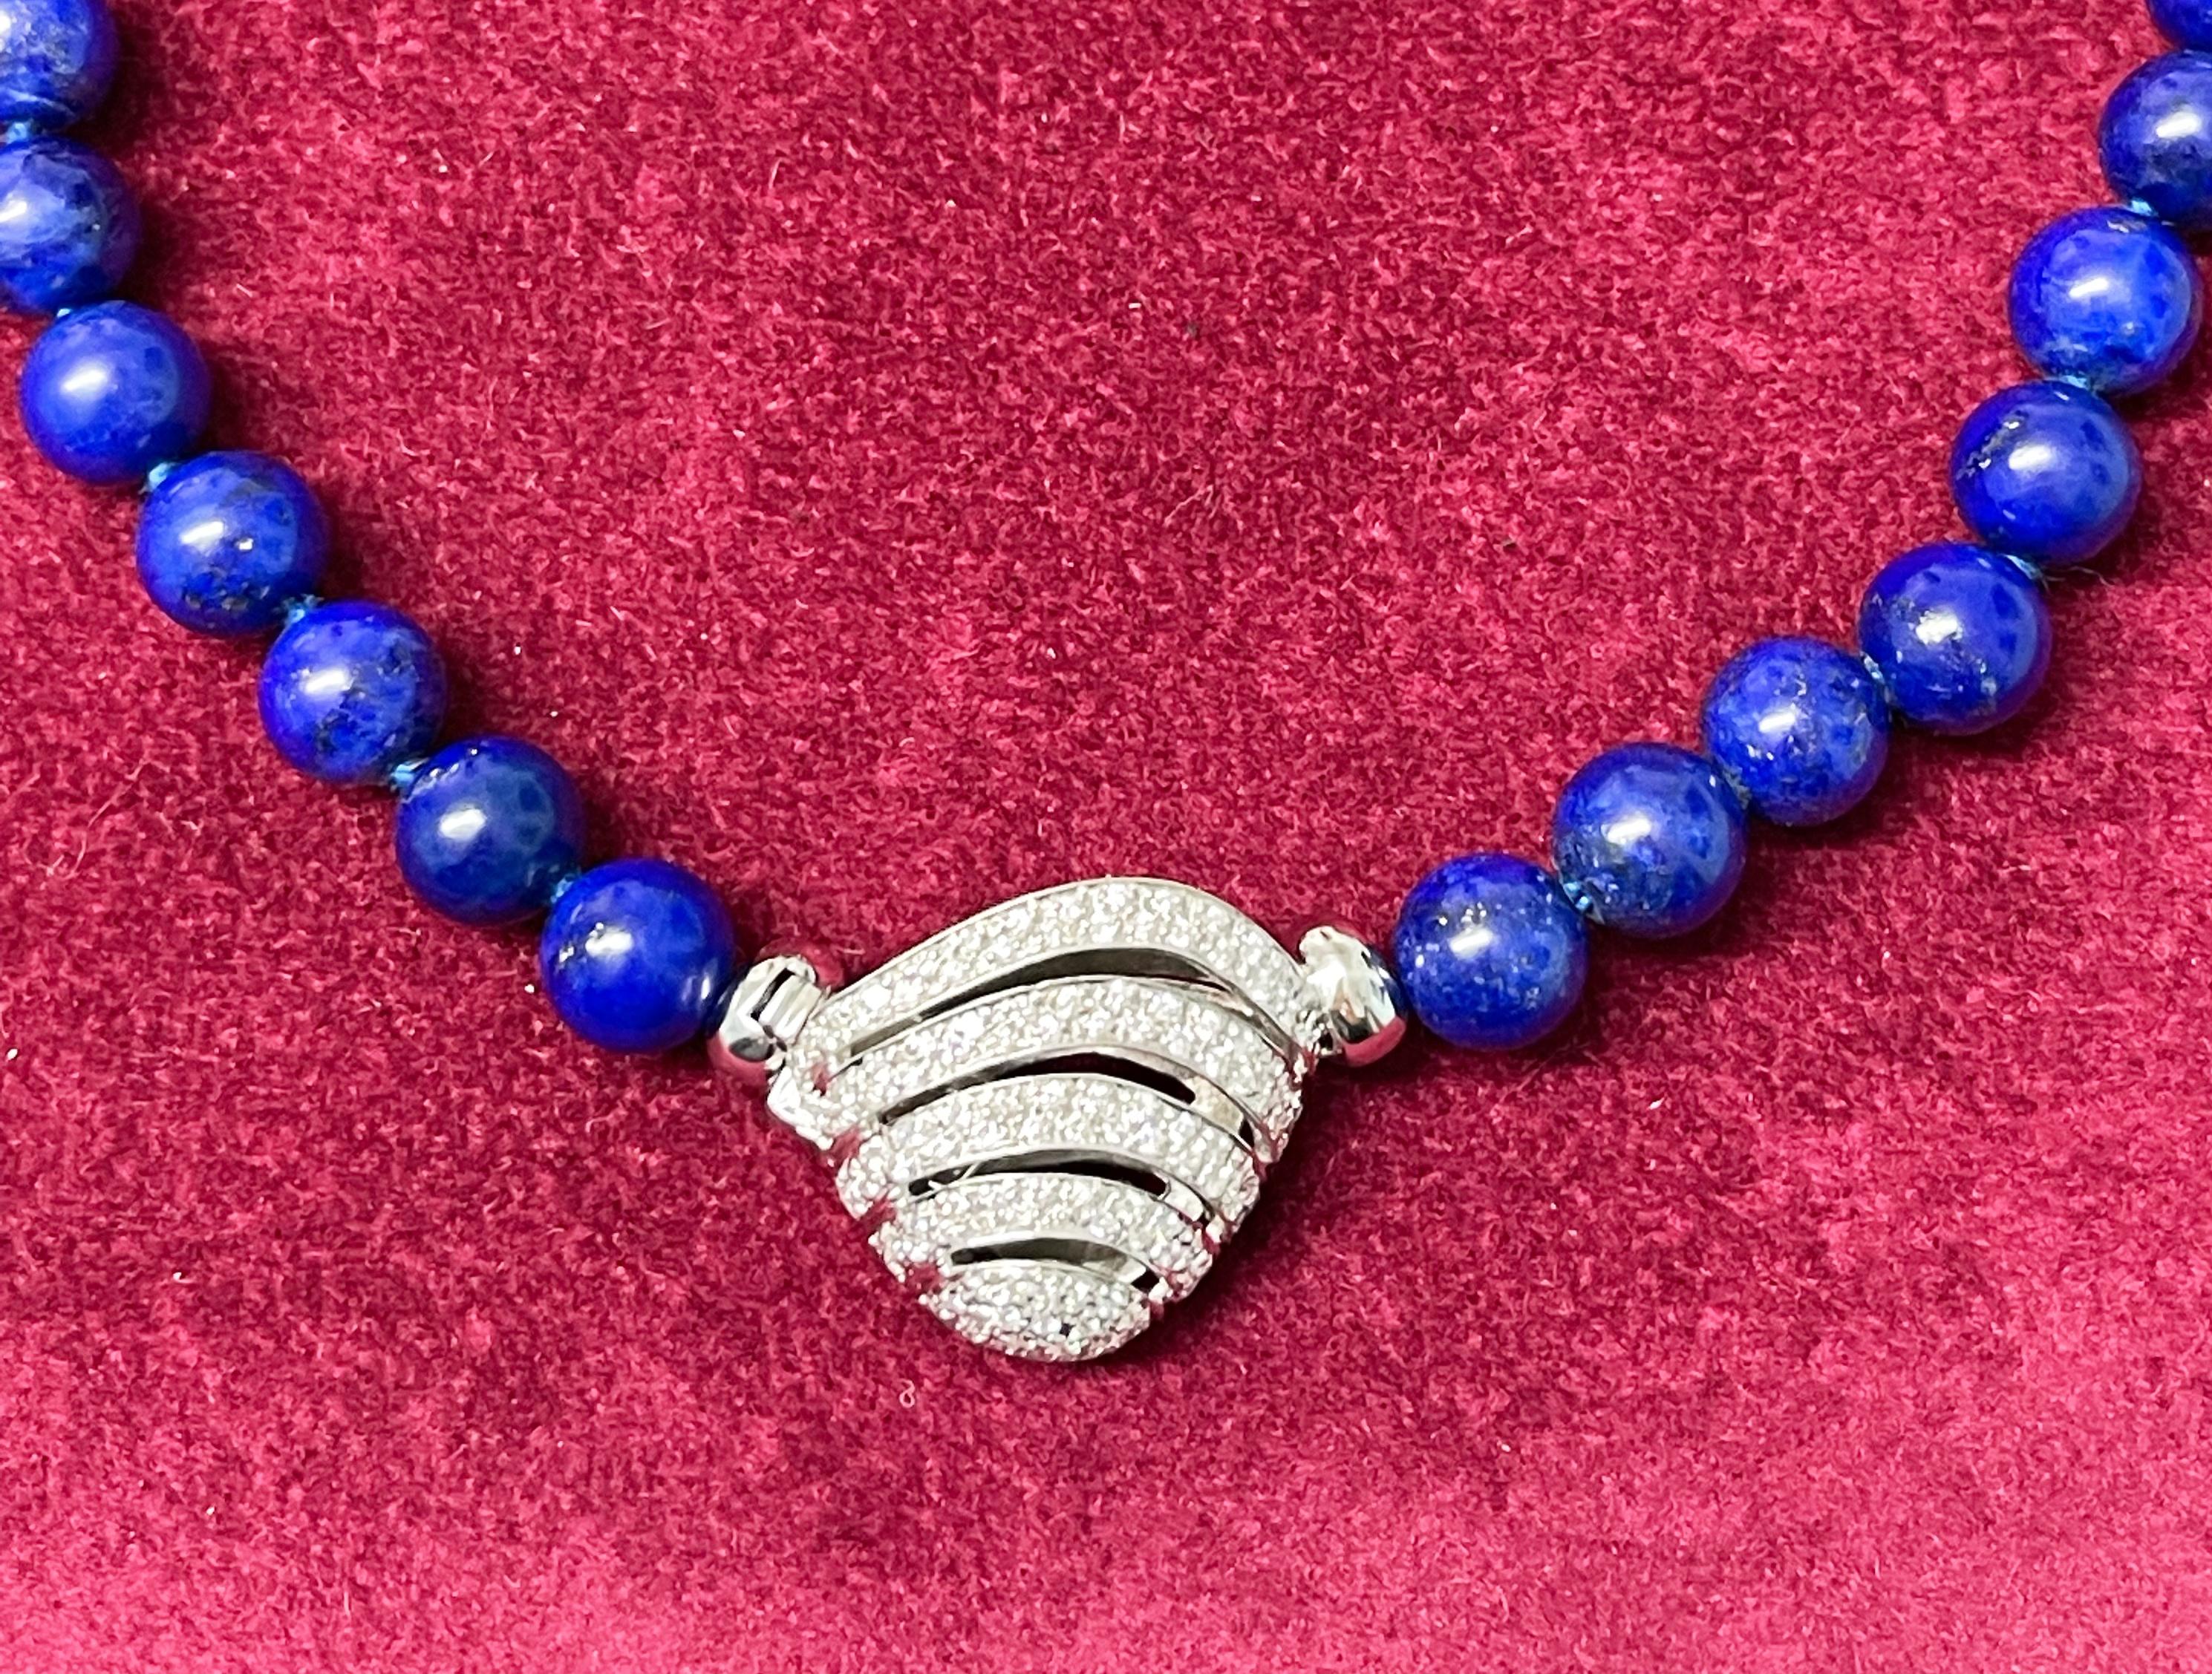 Diese wunderschöne und brillante Halskette besteht aus einem exquisiten Strang aus blauen  Lapislazuli-Kugel und einem speziellen Verschluss aus 18 Karat Weißgold, der mit leuchtenden Diamanten besetzt ist und diese Kette zu einem einzigartigen